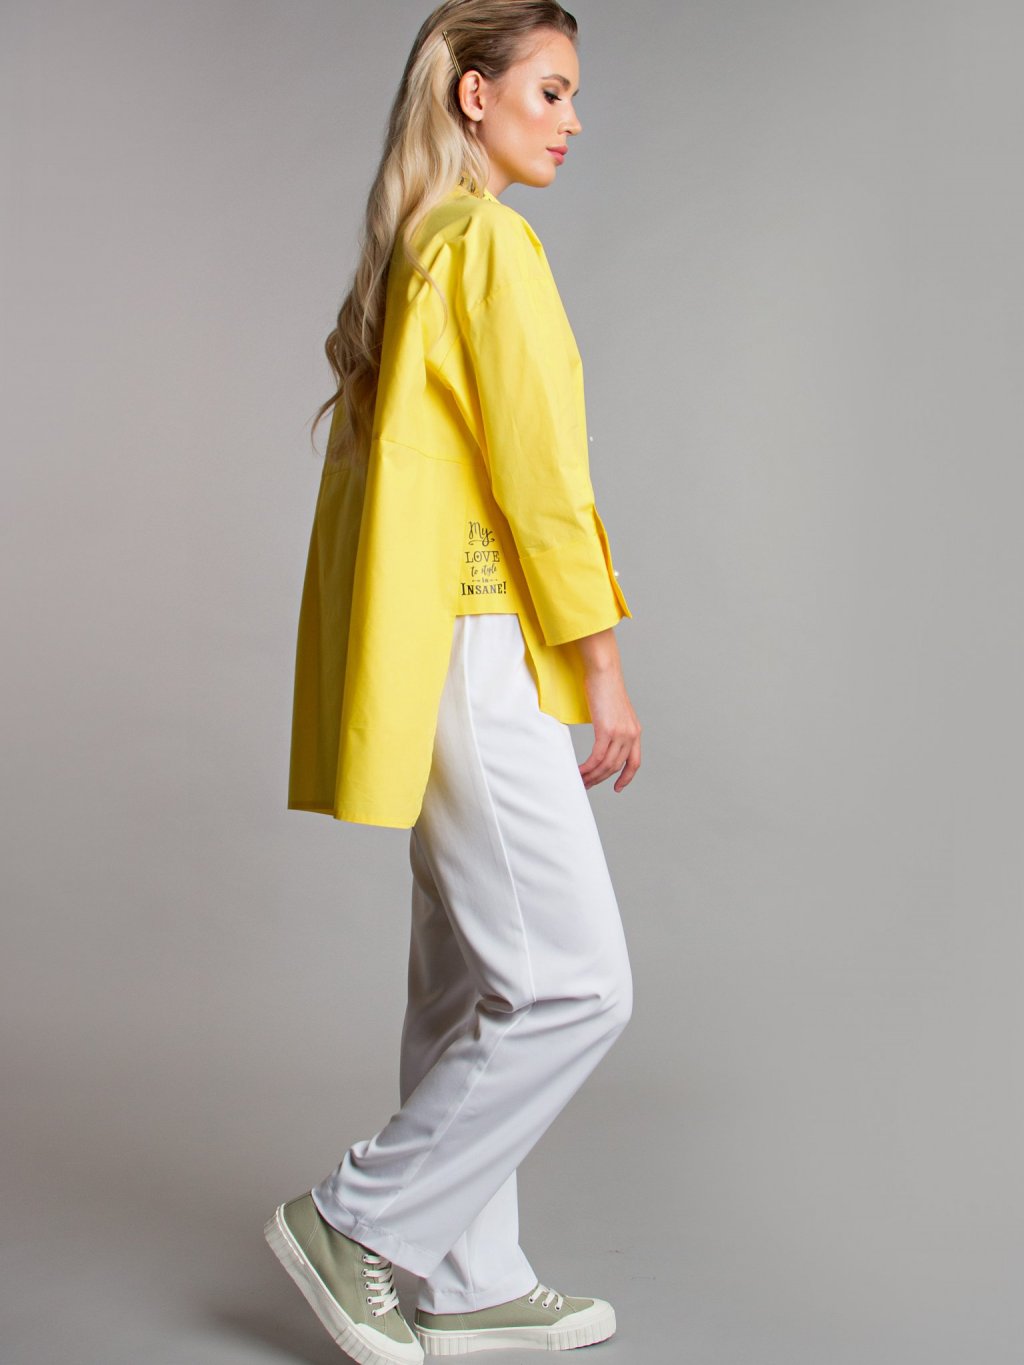 Блуза с надписями цвет желтый Б-115-5 - 6